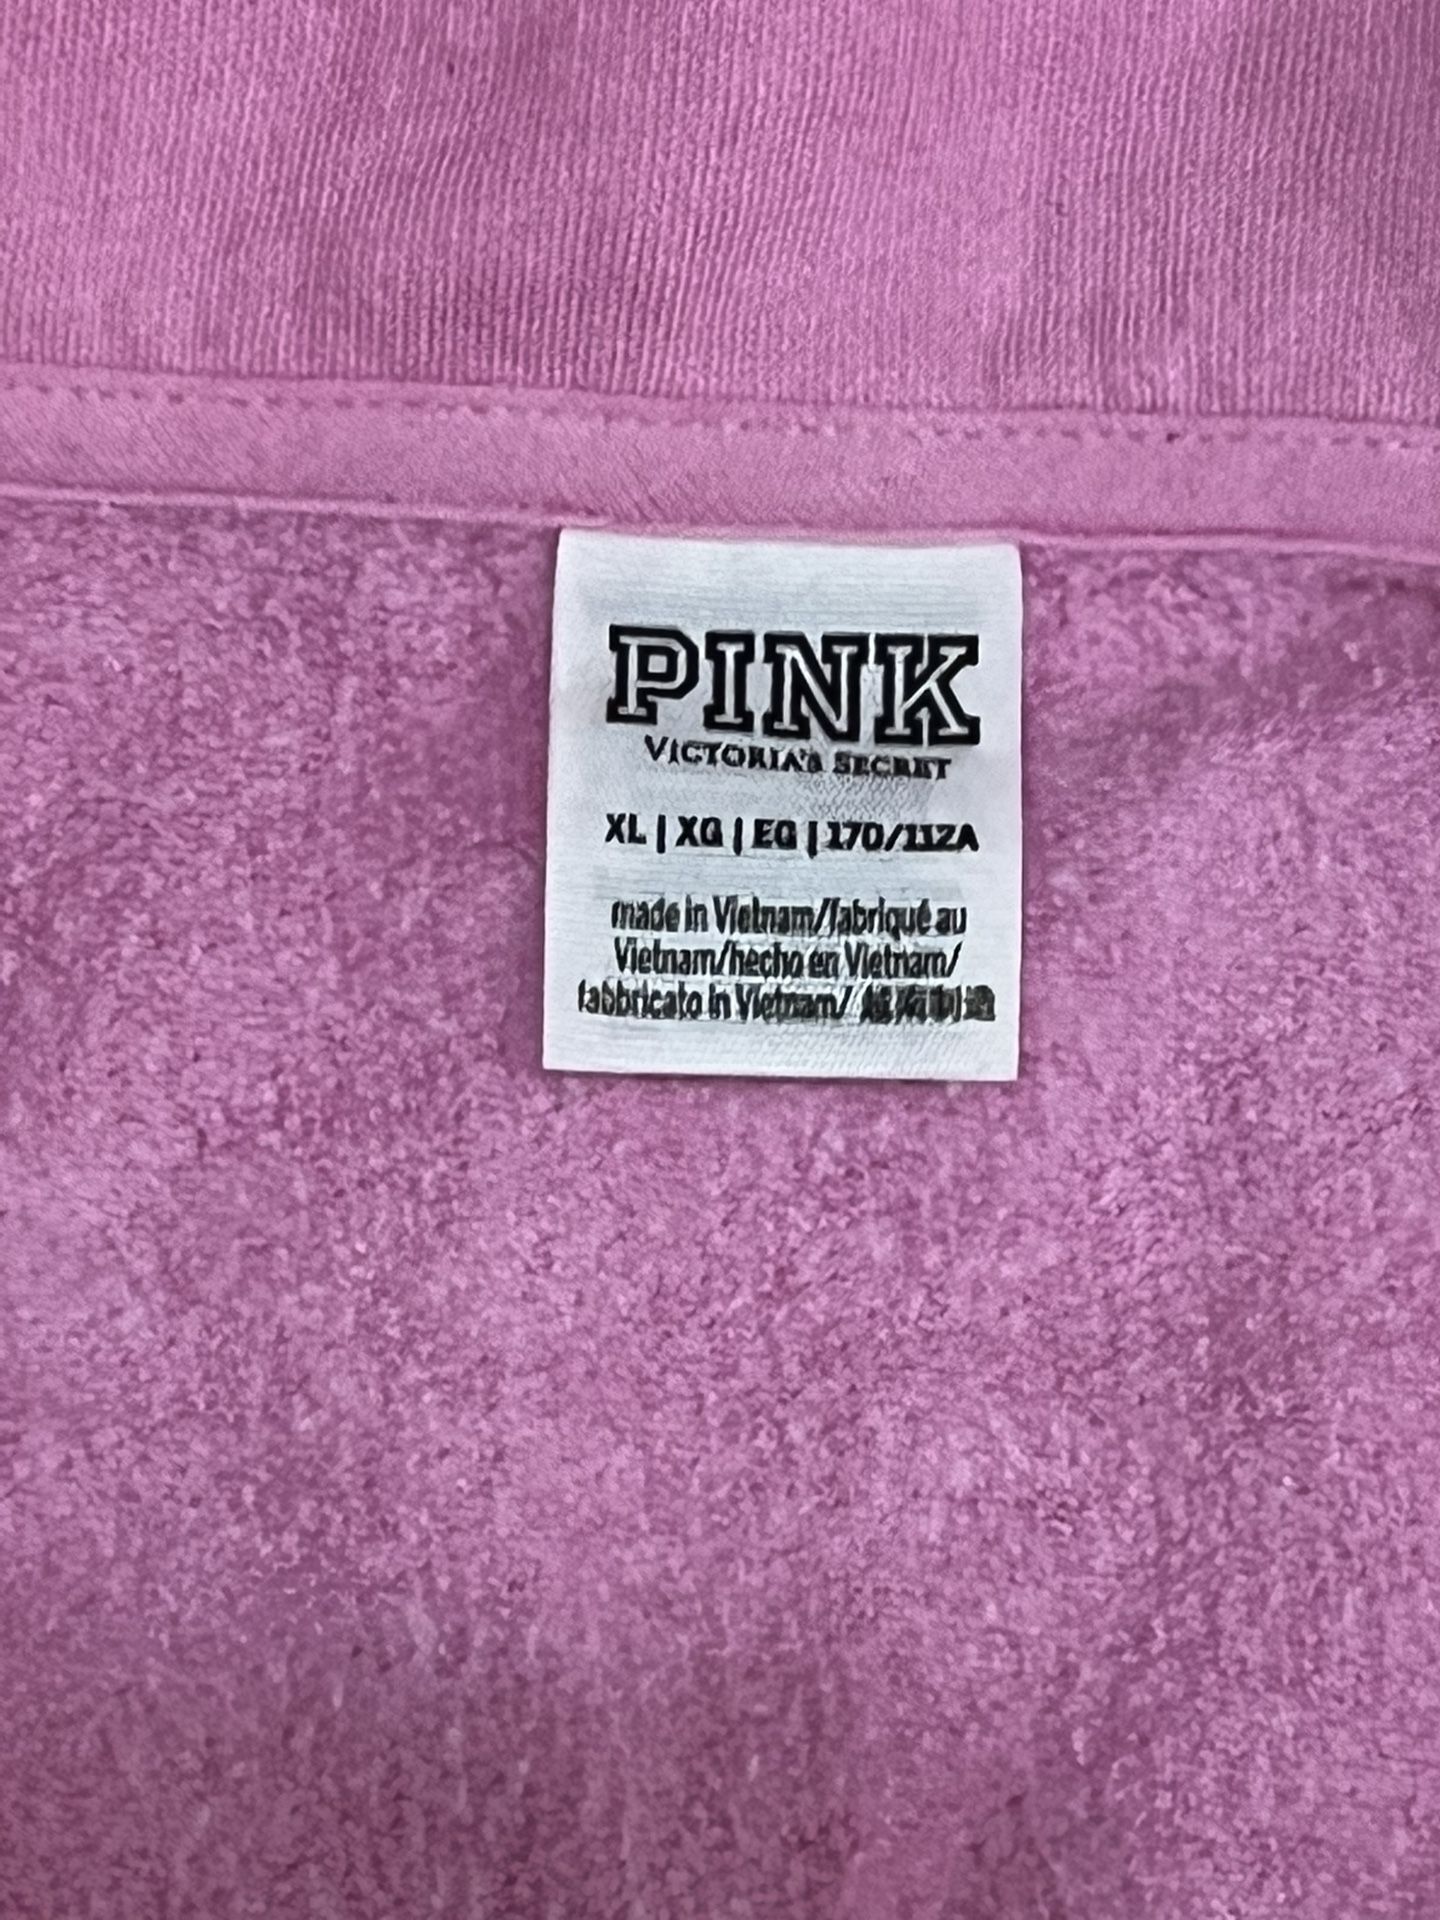 Women’s Victorias Secret Pink Pullover Sweatshirt - XL